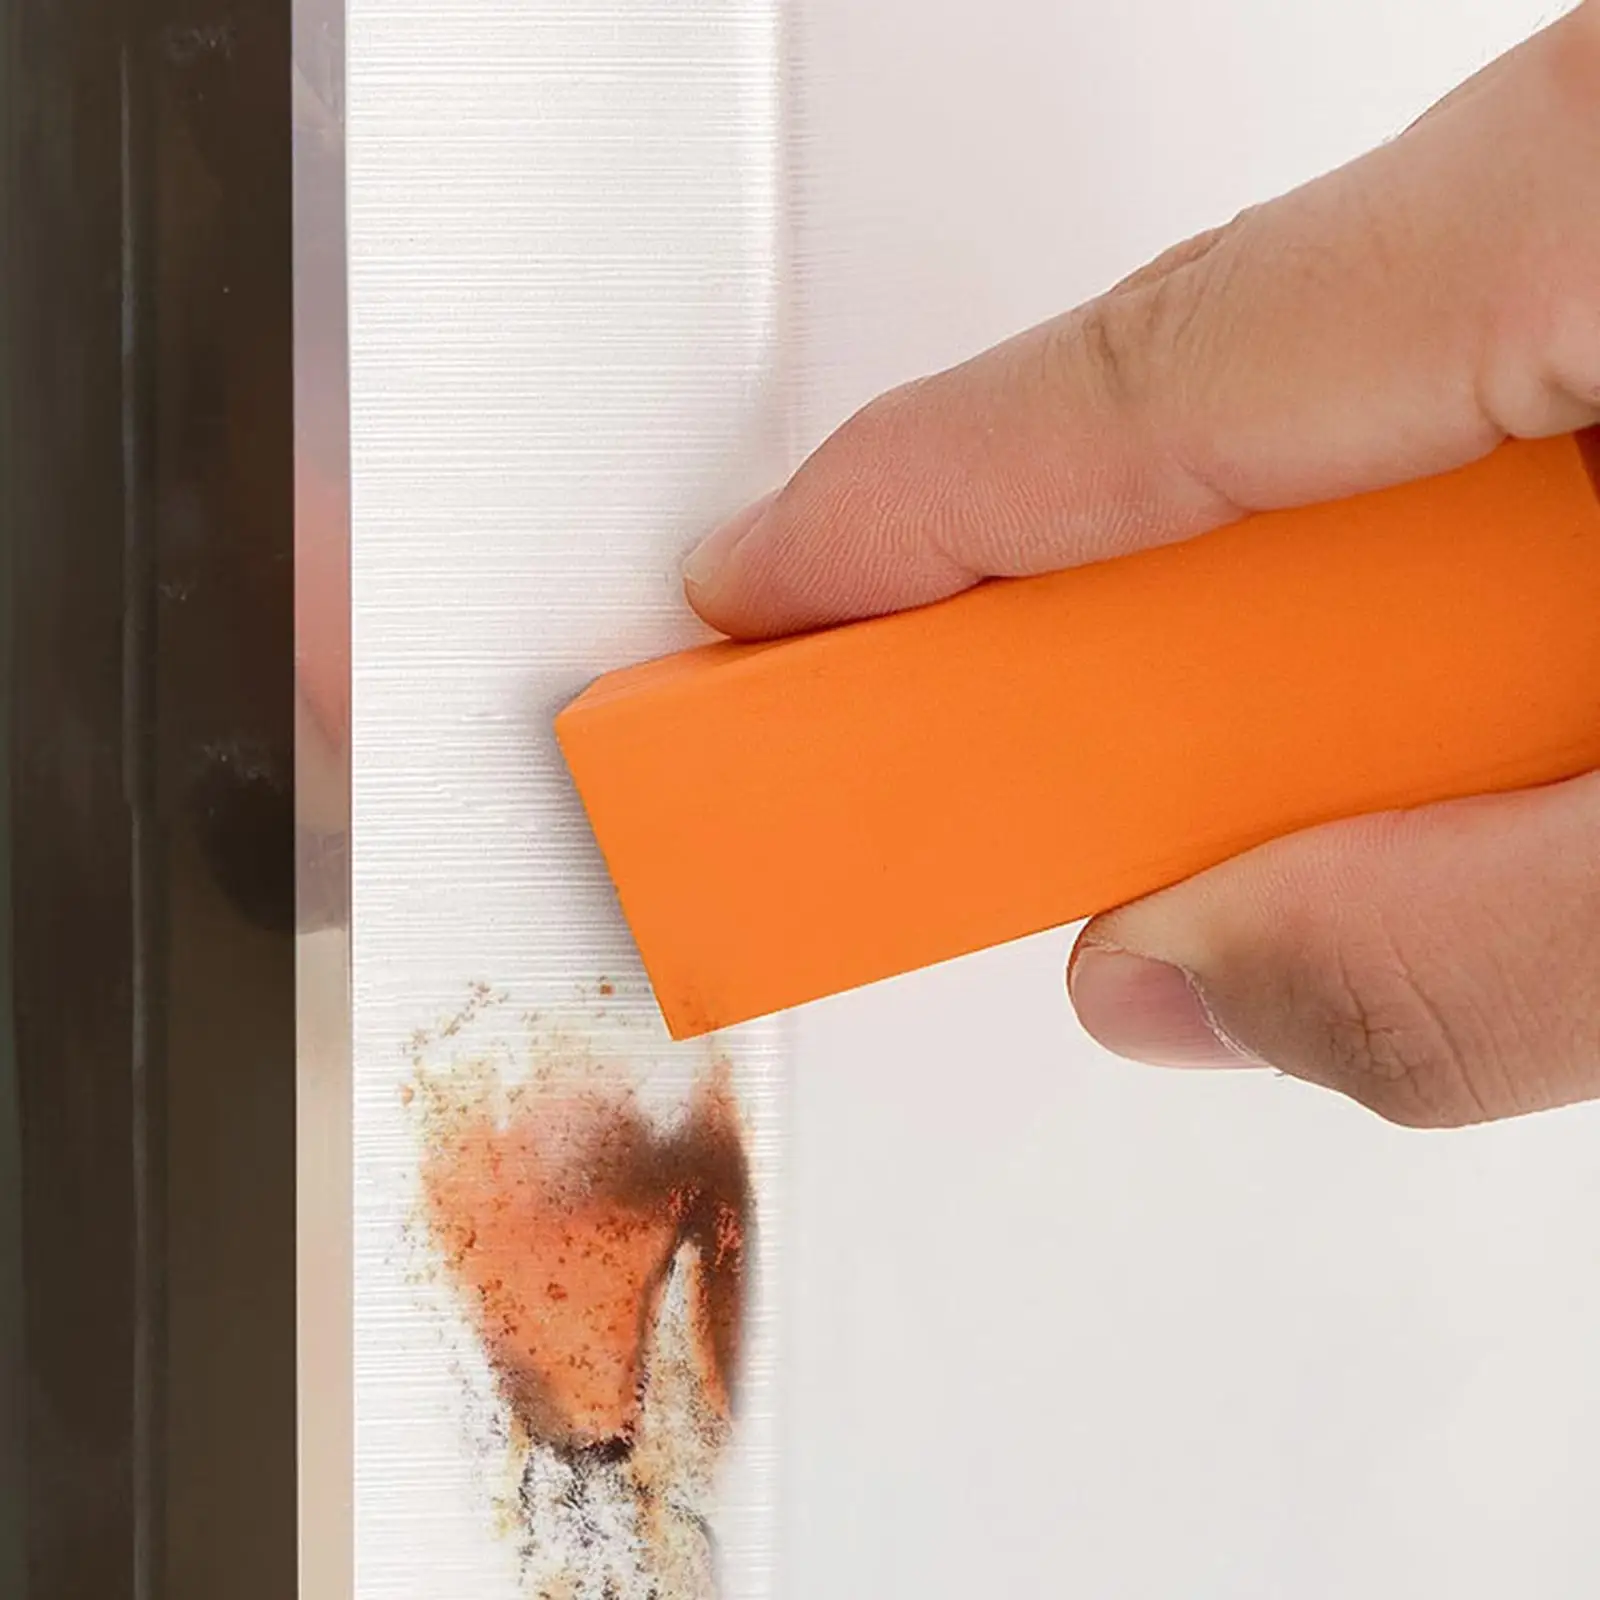 Rust Eraser Decontamination Artifact Eraser Orange Easy Limescale Eraser Stainless Surface Kitchen Bathroom Glass